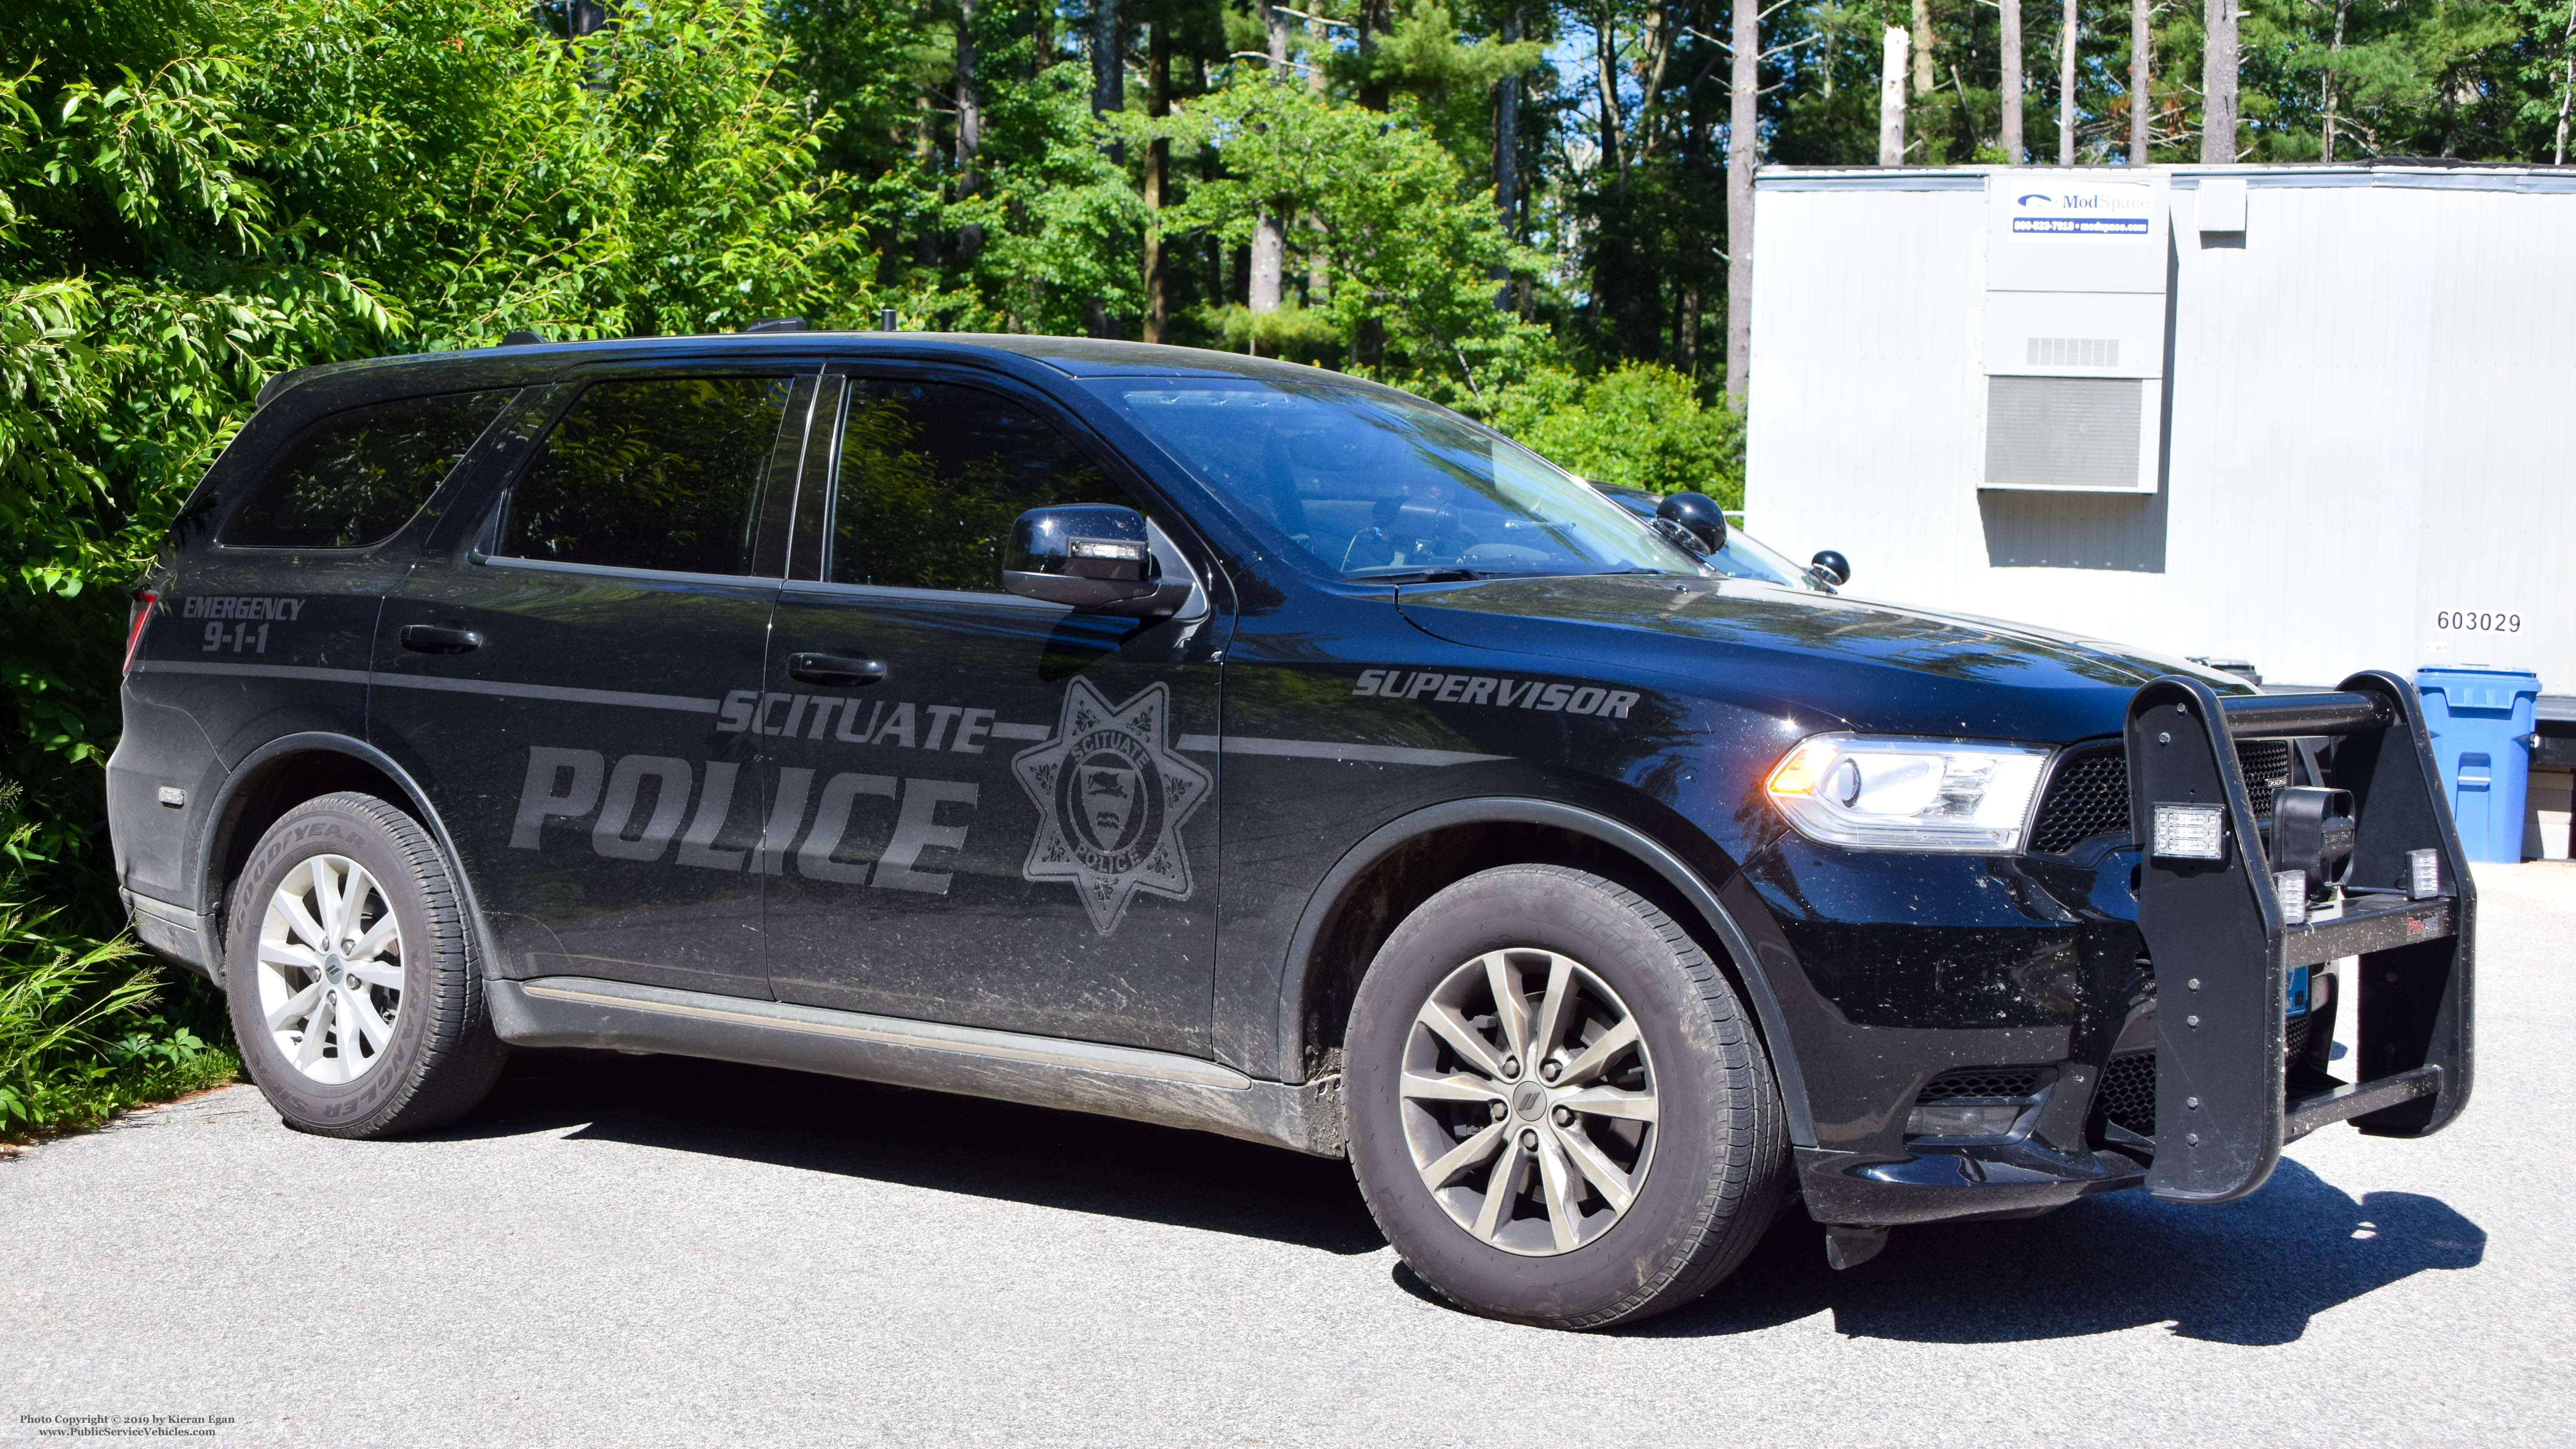 A photo  of Scituate Police
            Cruiser 809, a 2019 Dodge Durango             taken by Kieran Egan